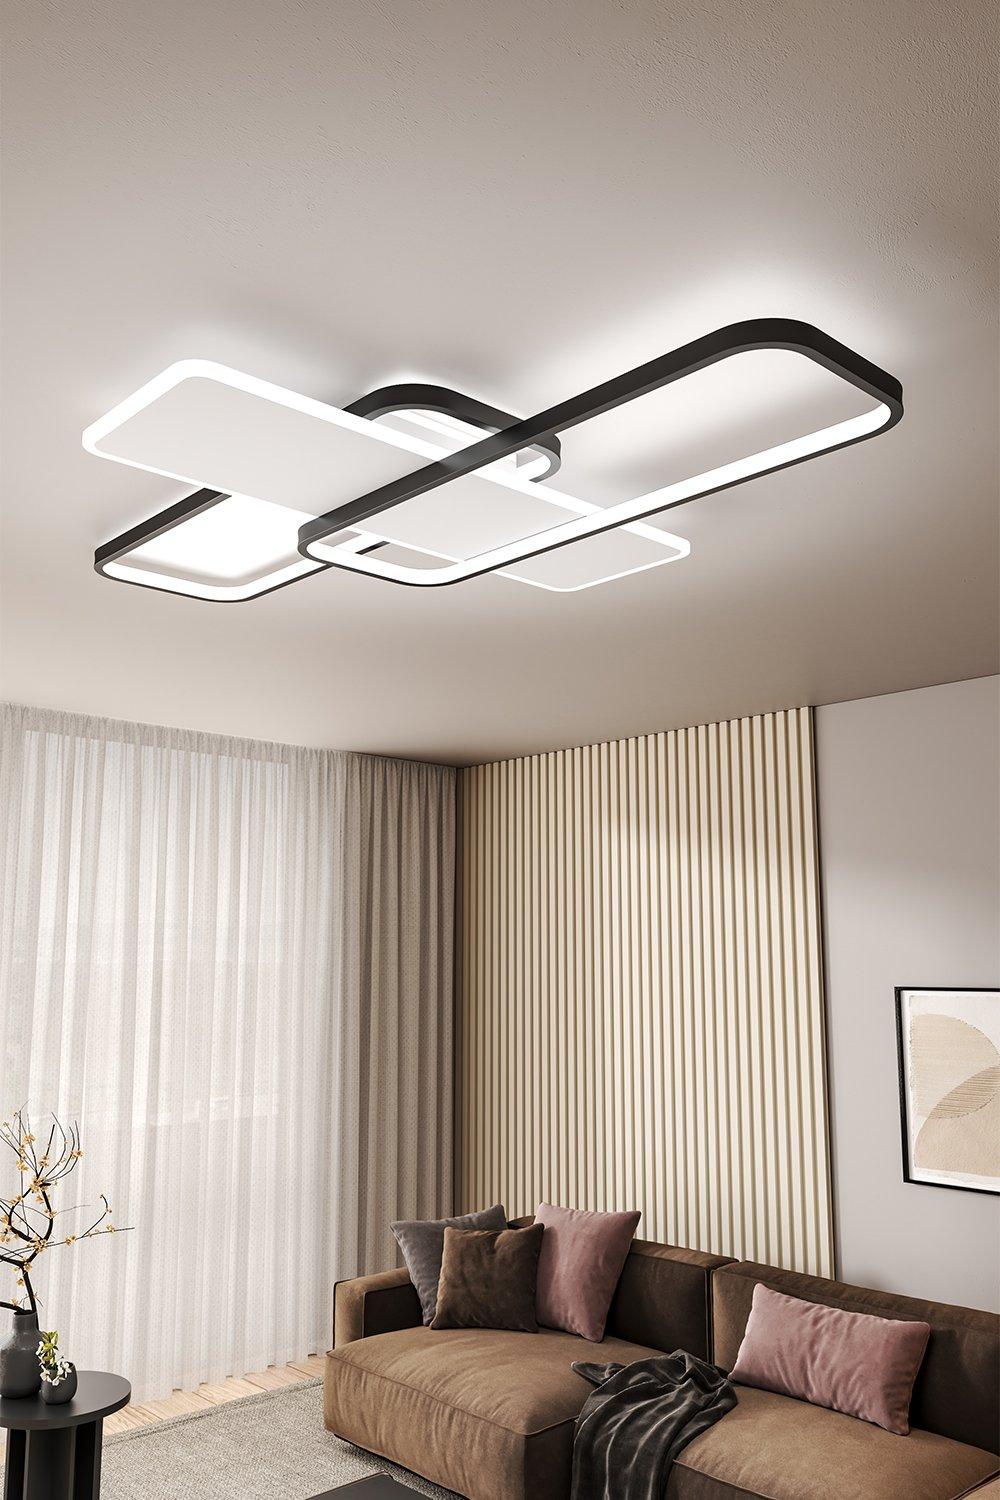 110*70cm Rectangular LED Modern Ceiling Light